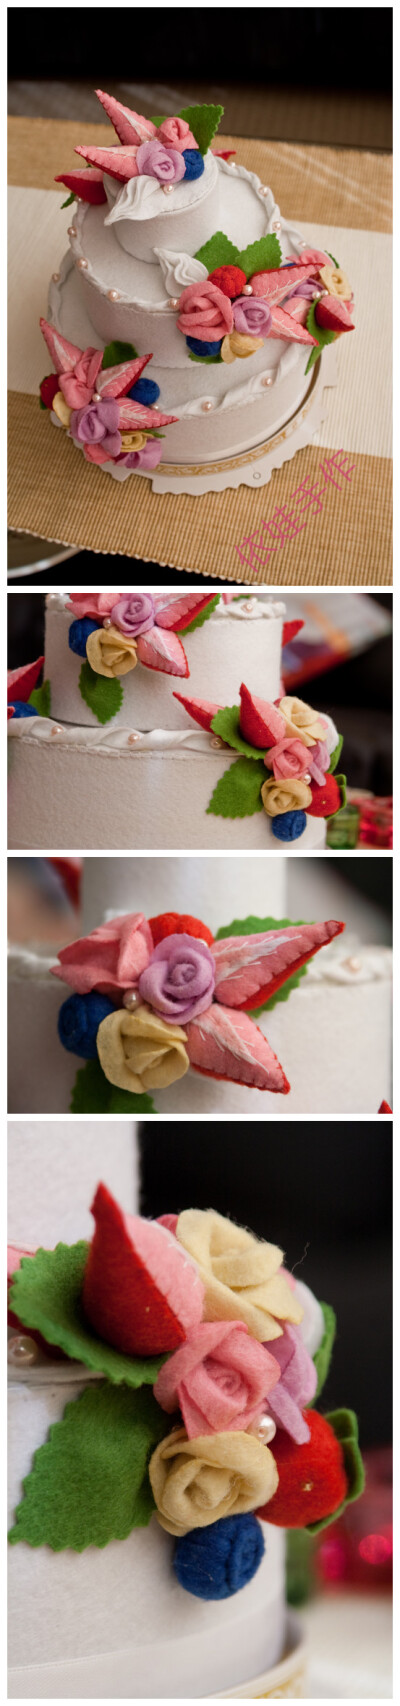 三层不织布婚礼蛋糕 做的好辛苦 当初真的应该用这款设计做自己婚礼的蛋糕（可以吃的） 那真就完美啦~~